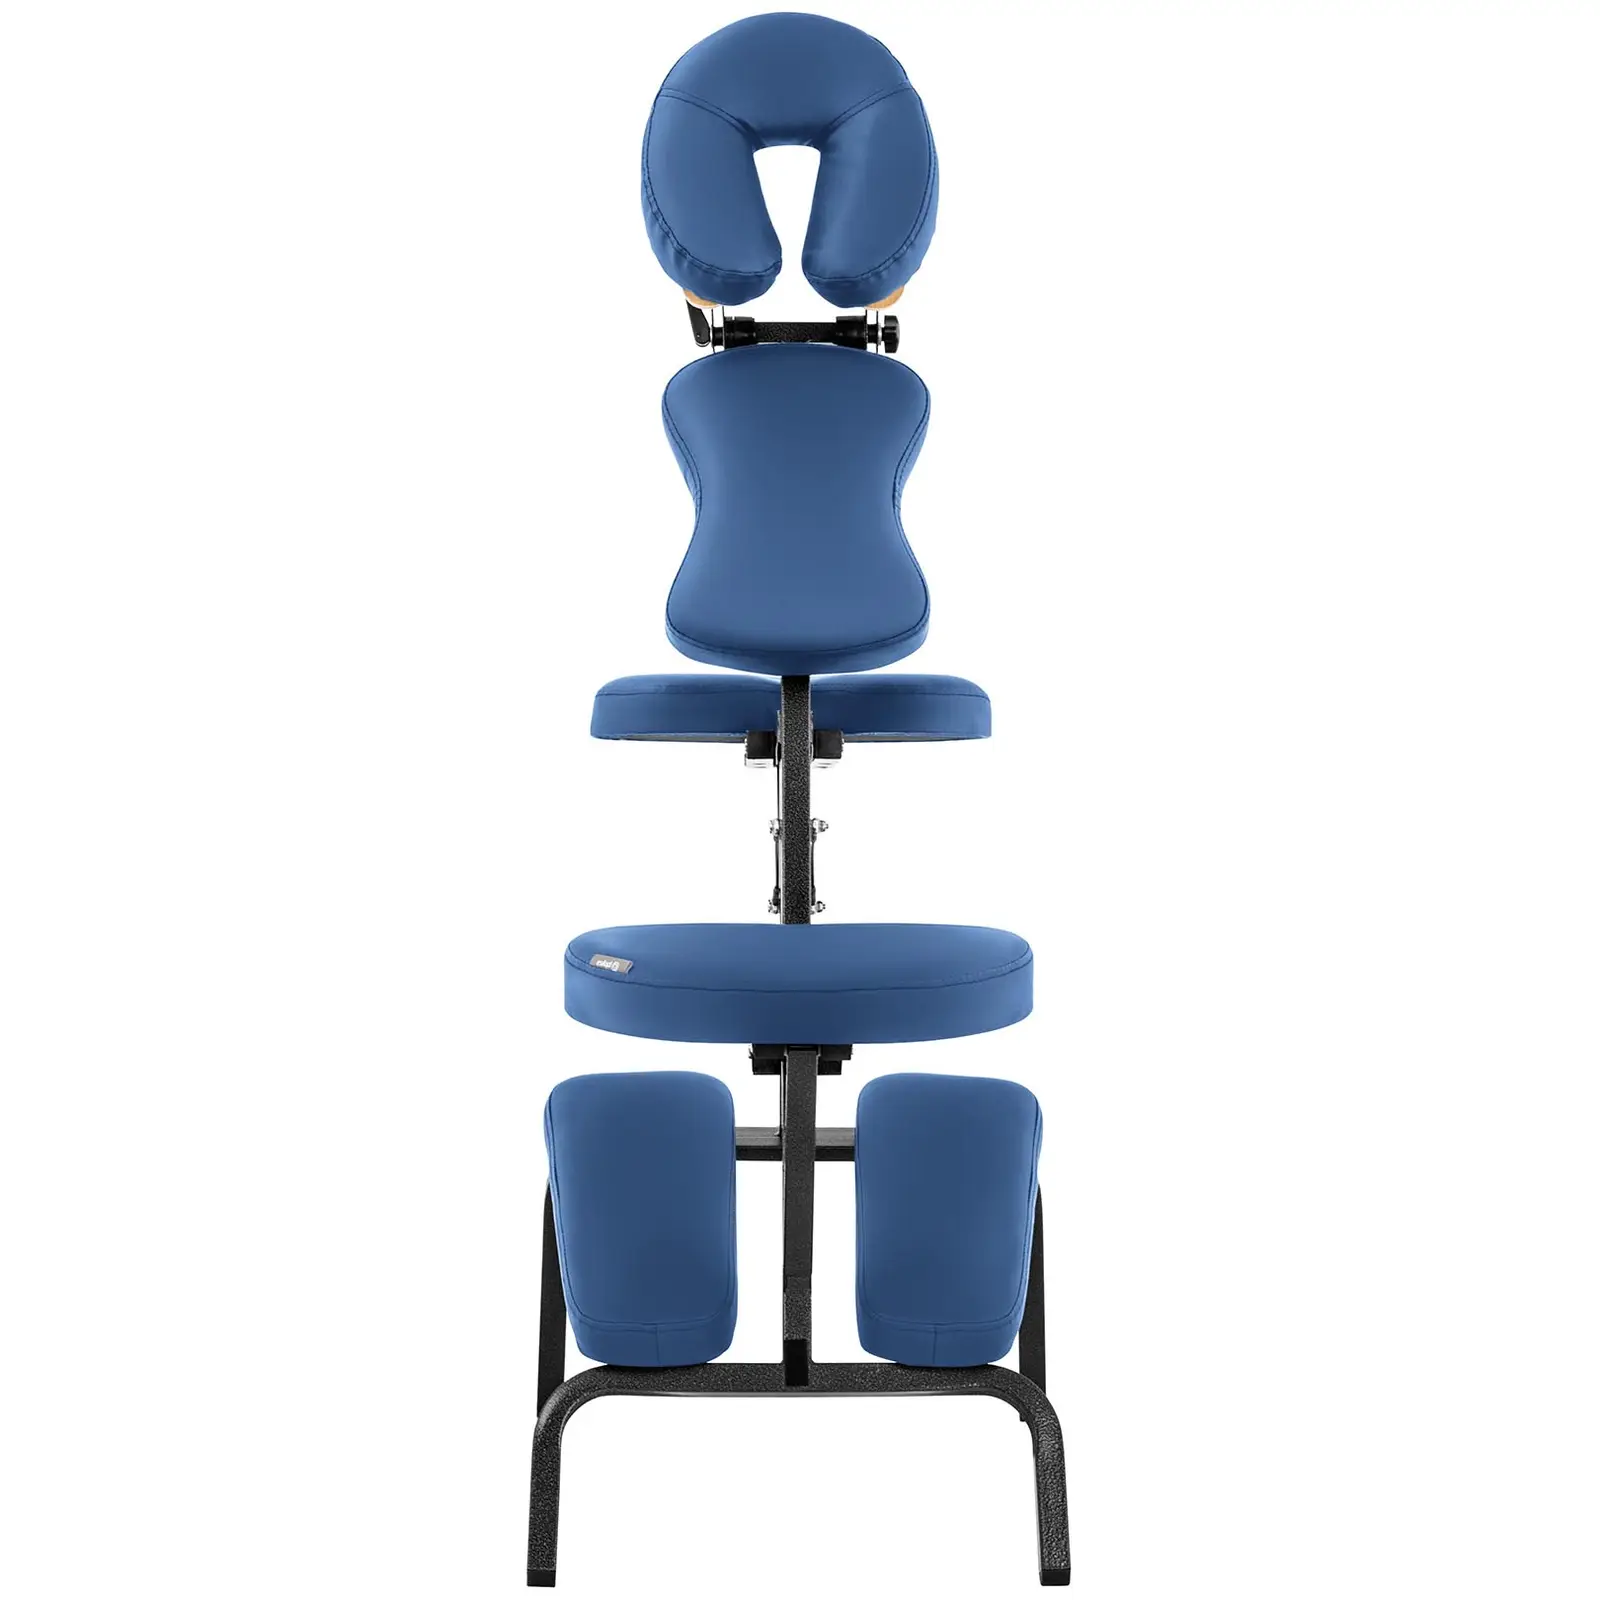 Massagestuhl klappbar - 130 kg - Blau - 6